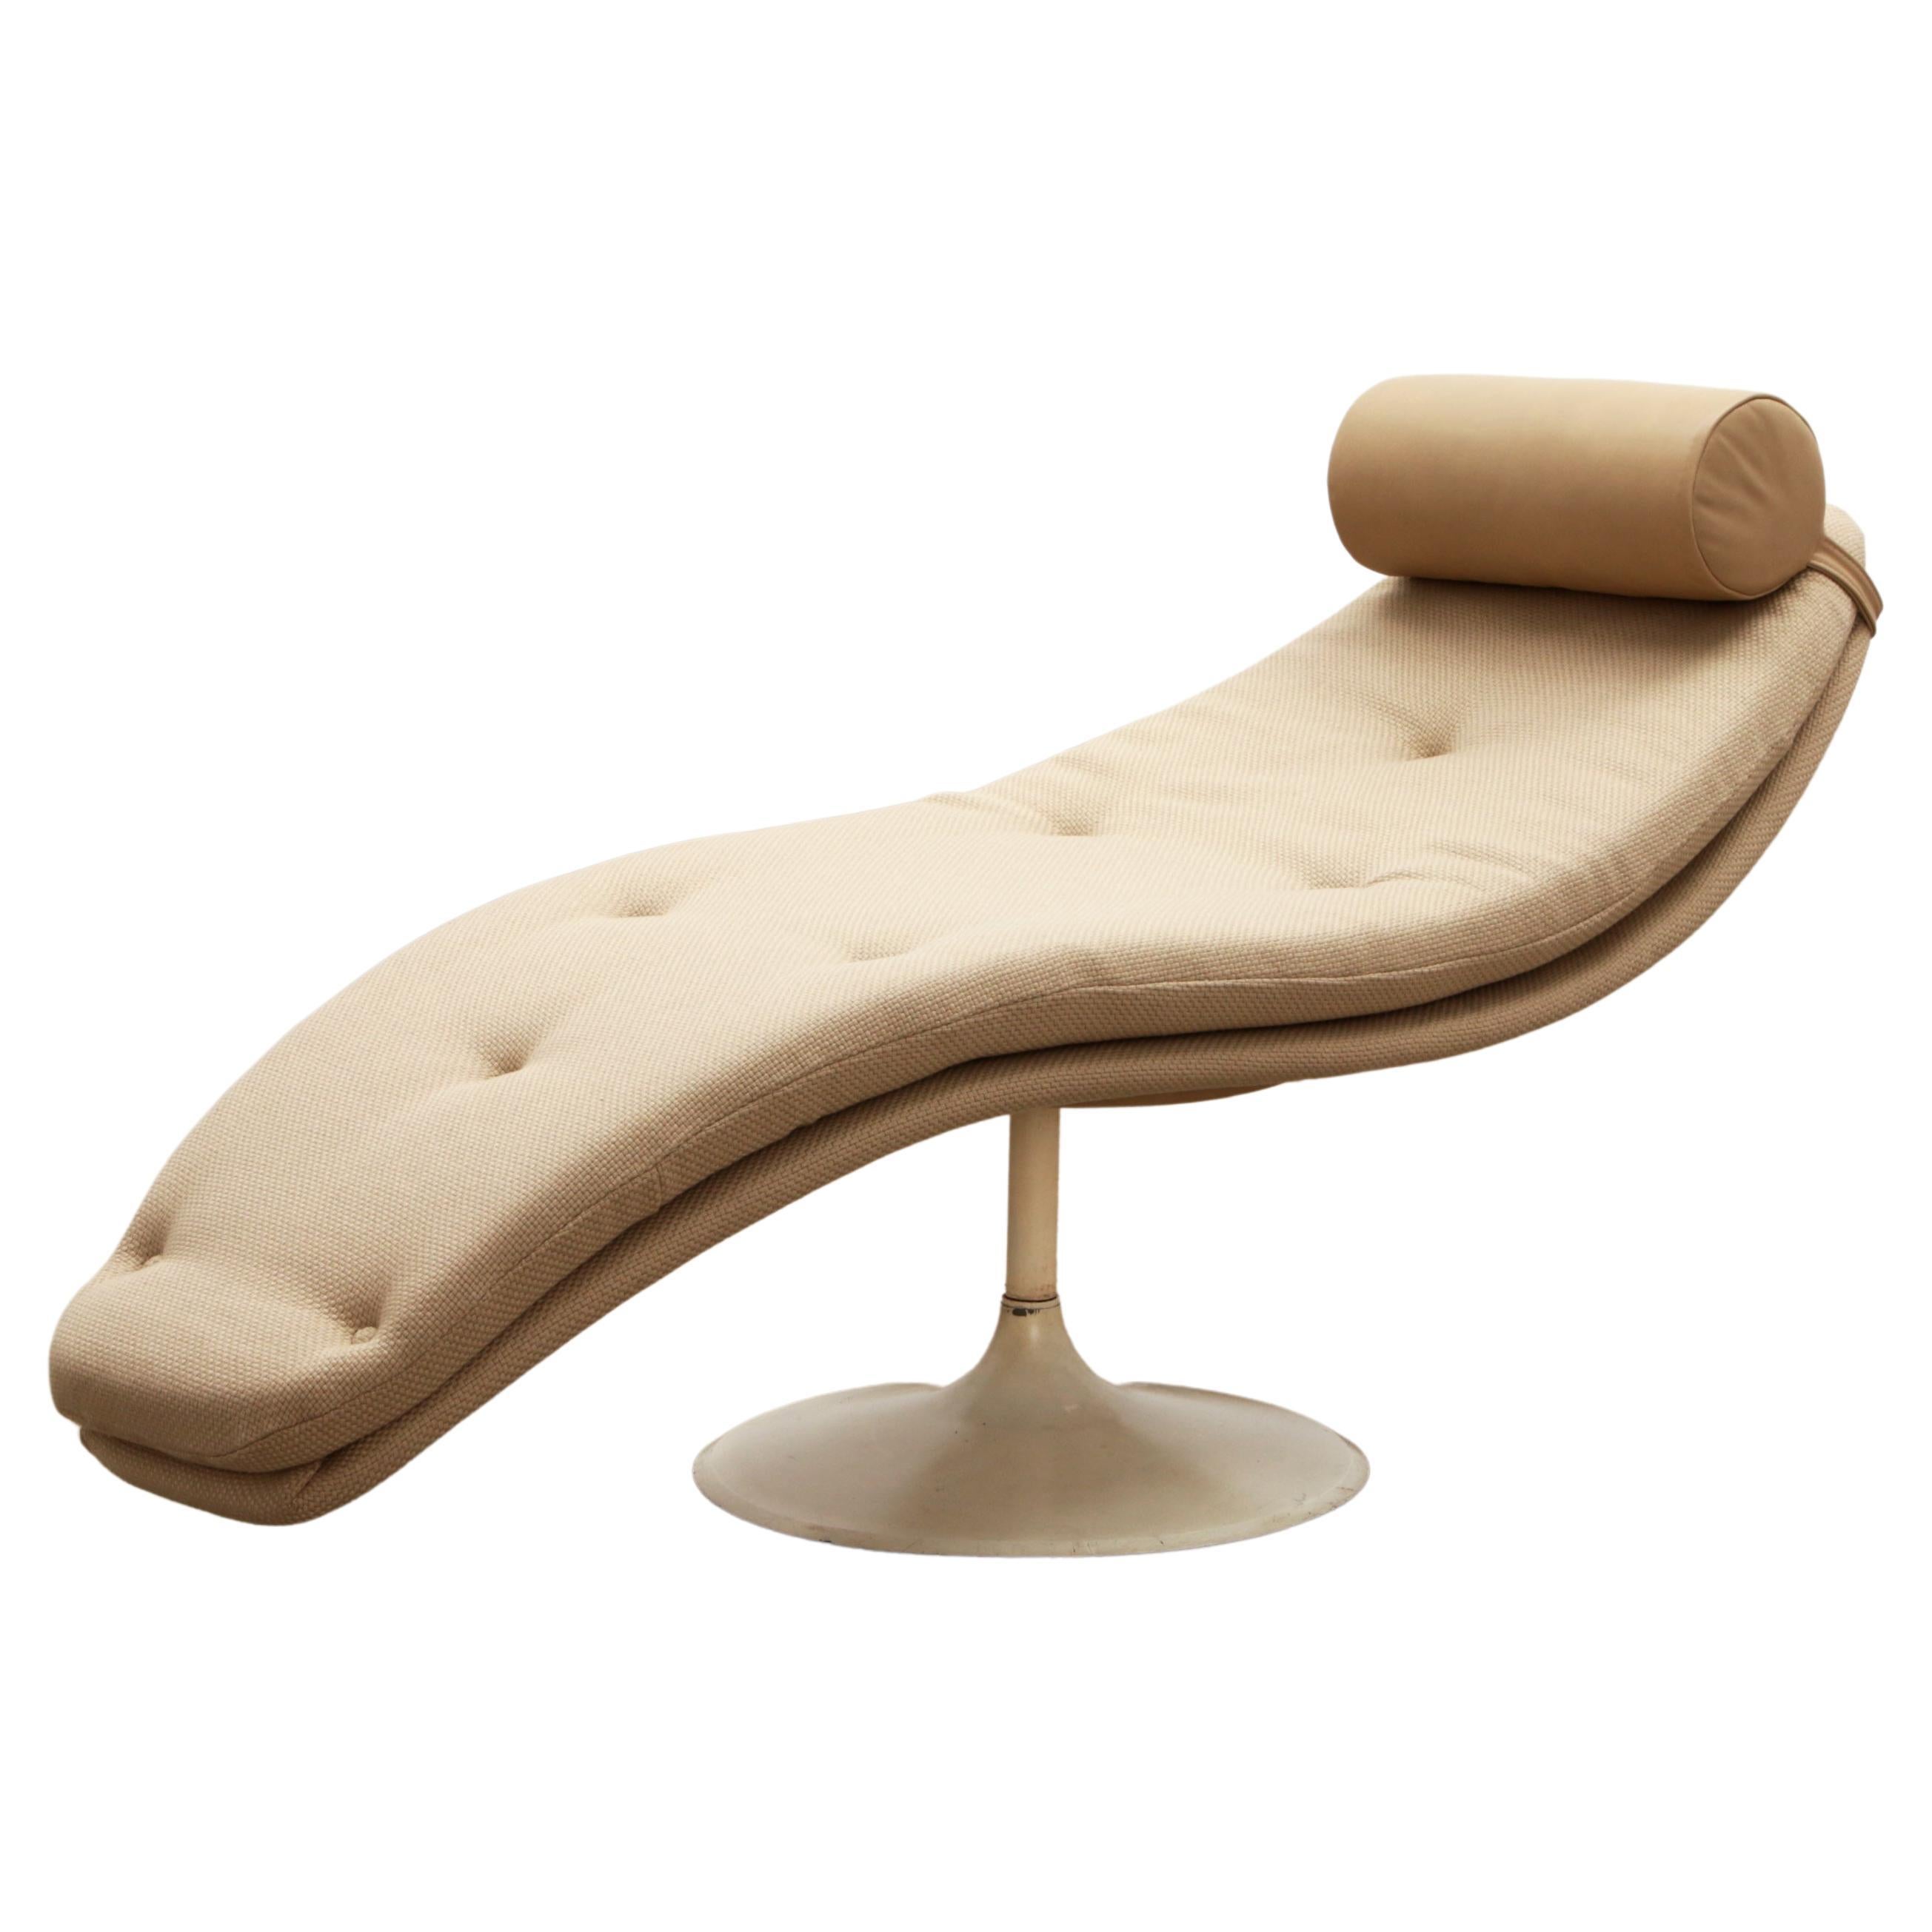 Vintage Lounge Sessel aus den 1960er Jahren im Stil von Knoll neu gepolstert.